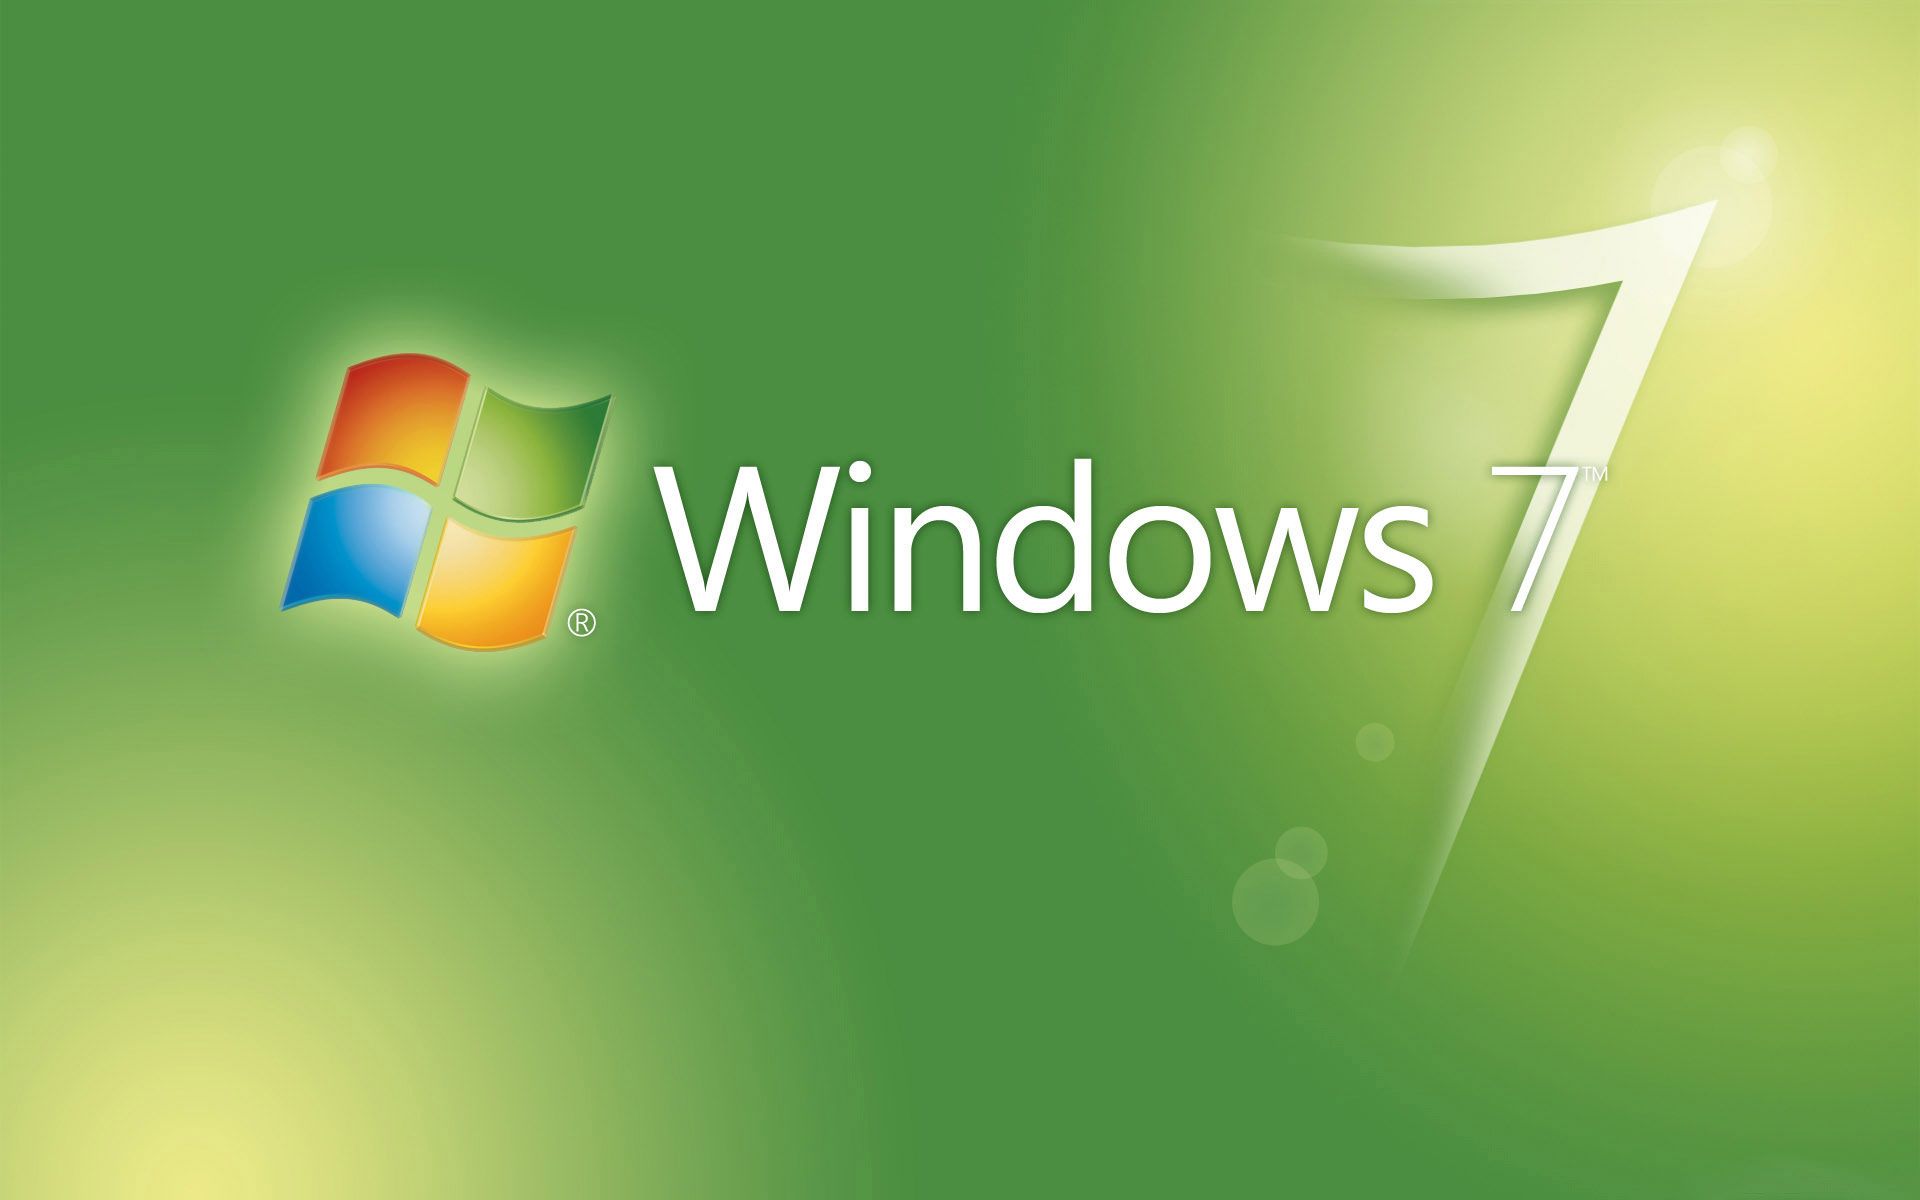 Desktop Wallpaper Gallery Windows 7 windows 7 - Green Peace